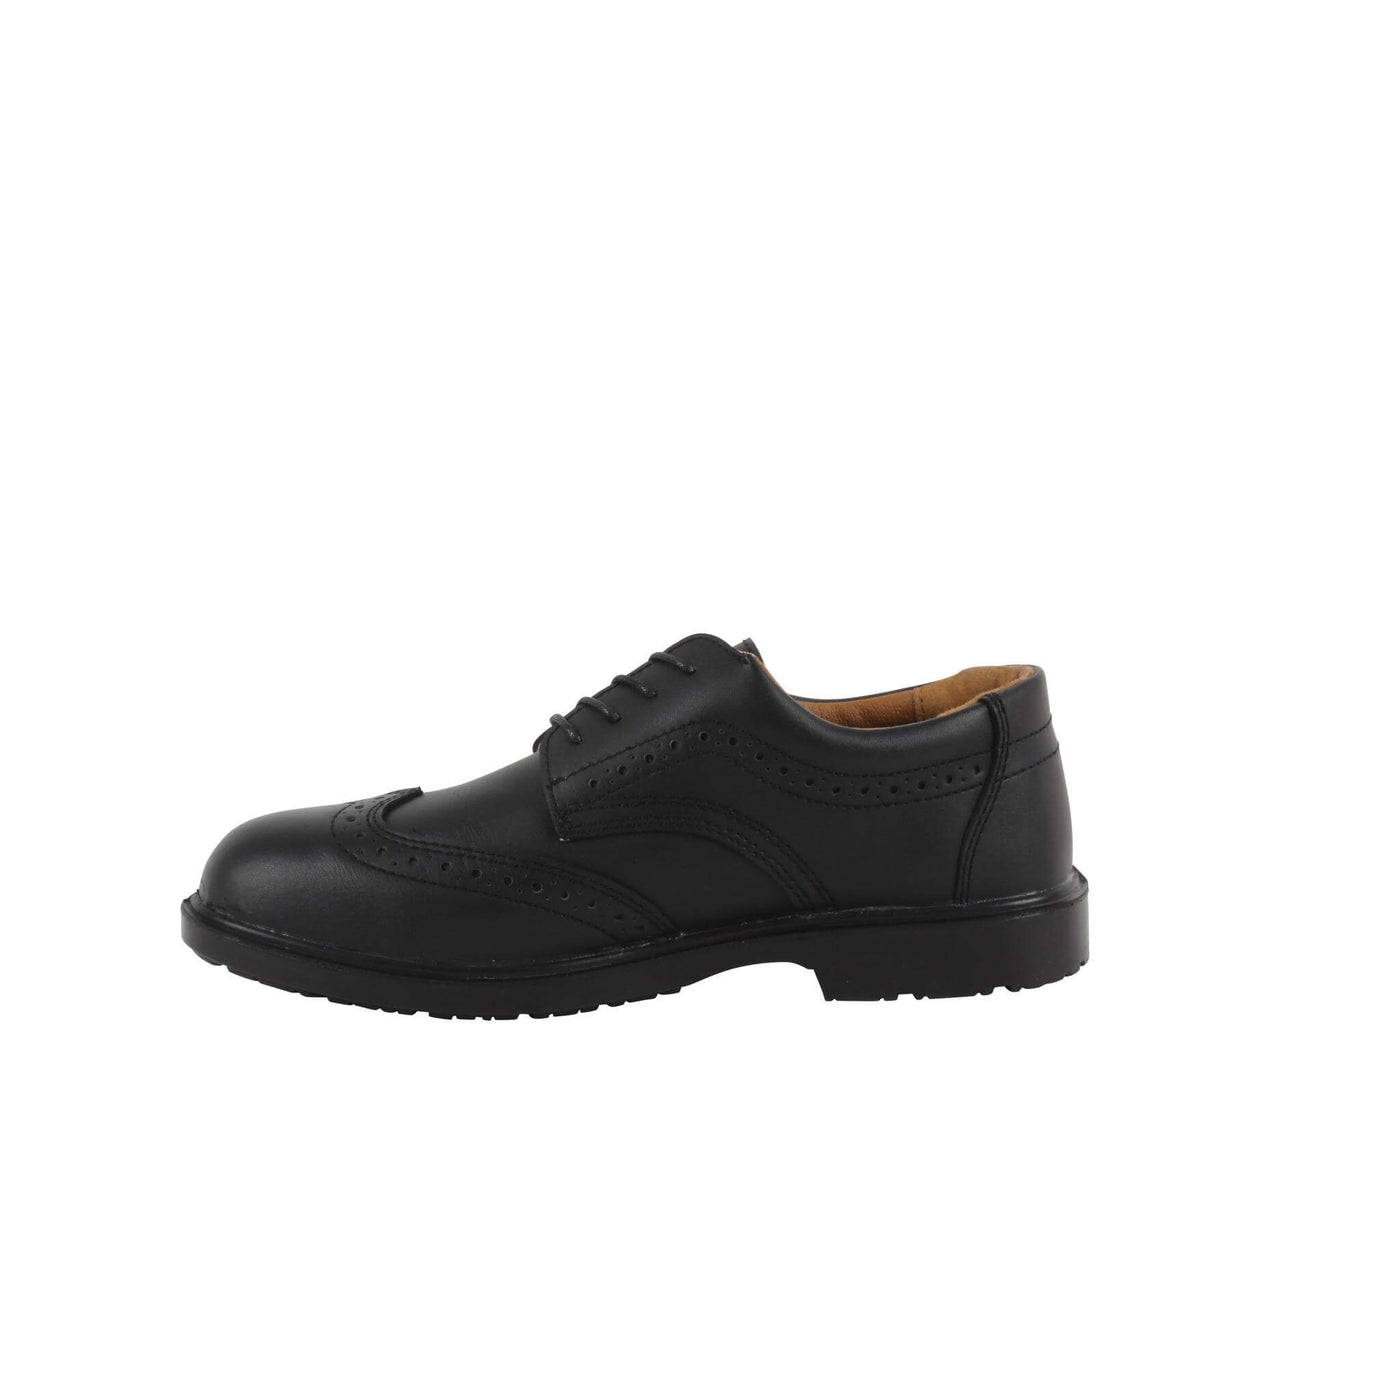 Blackrock Brogue Safety Shoes Black 2#colour_black